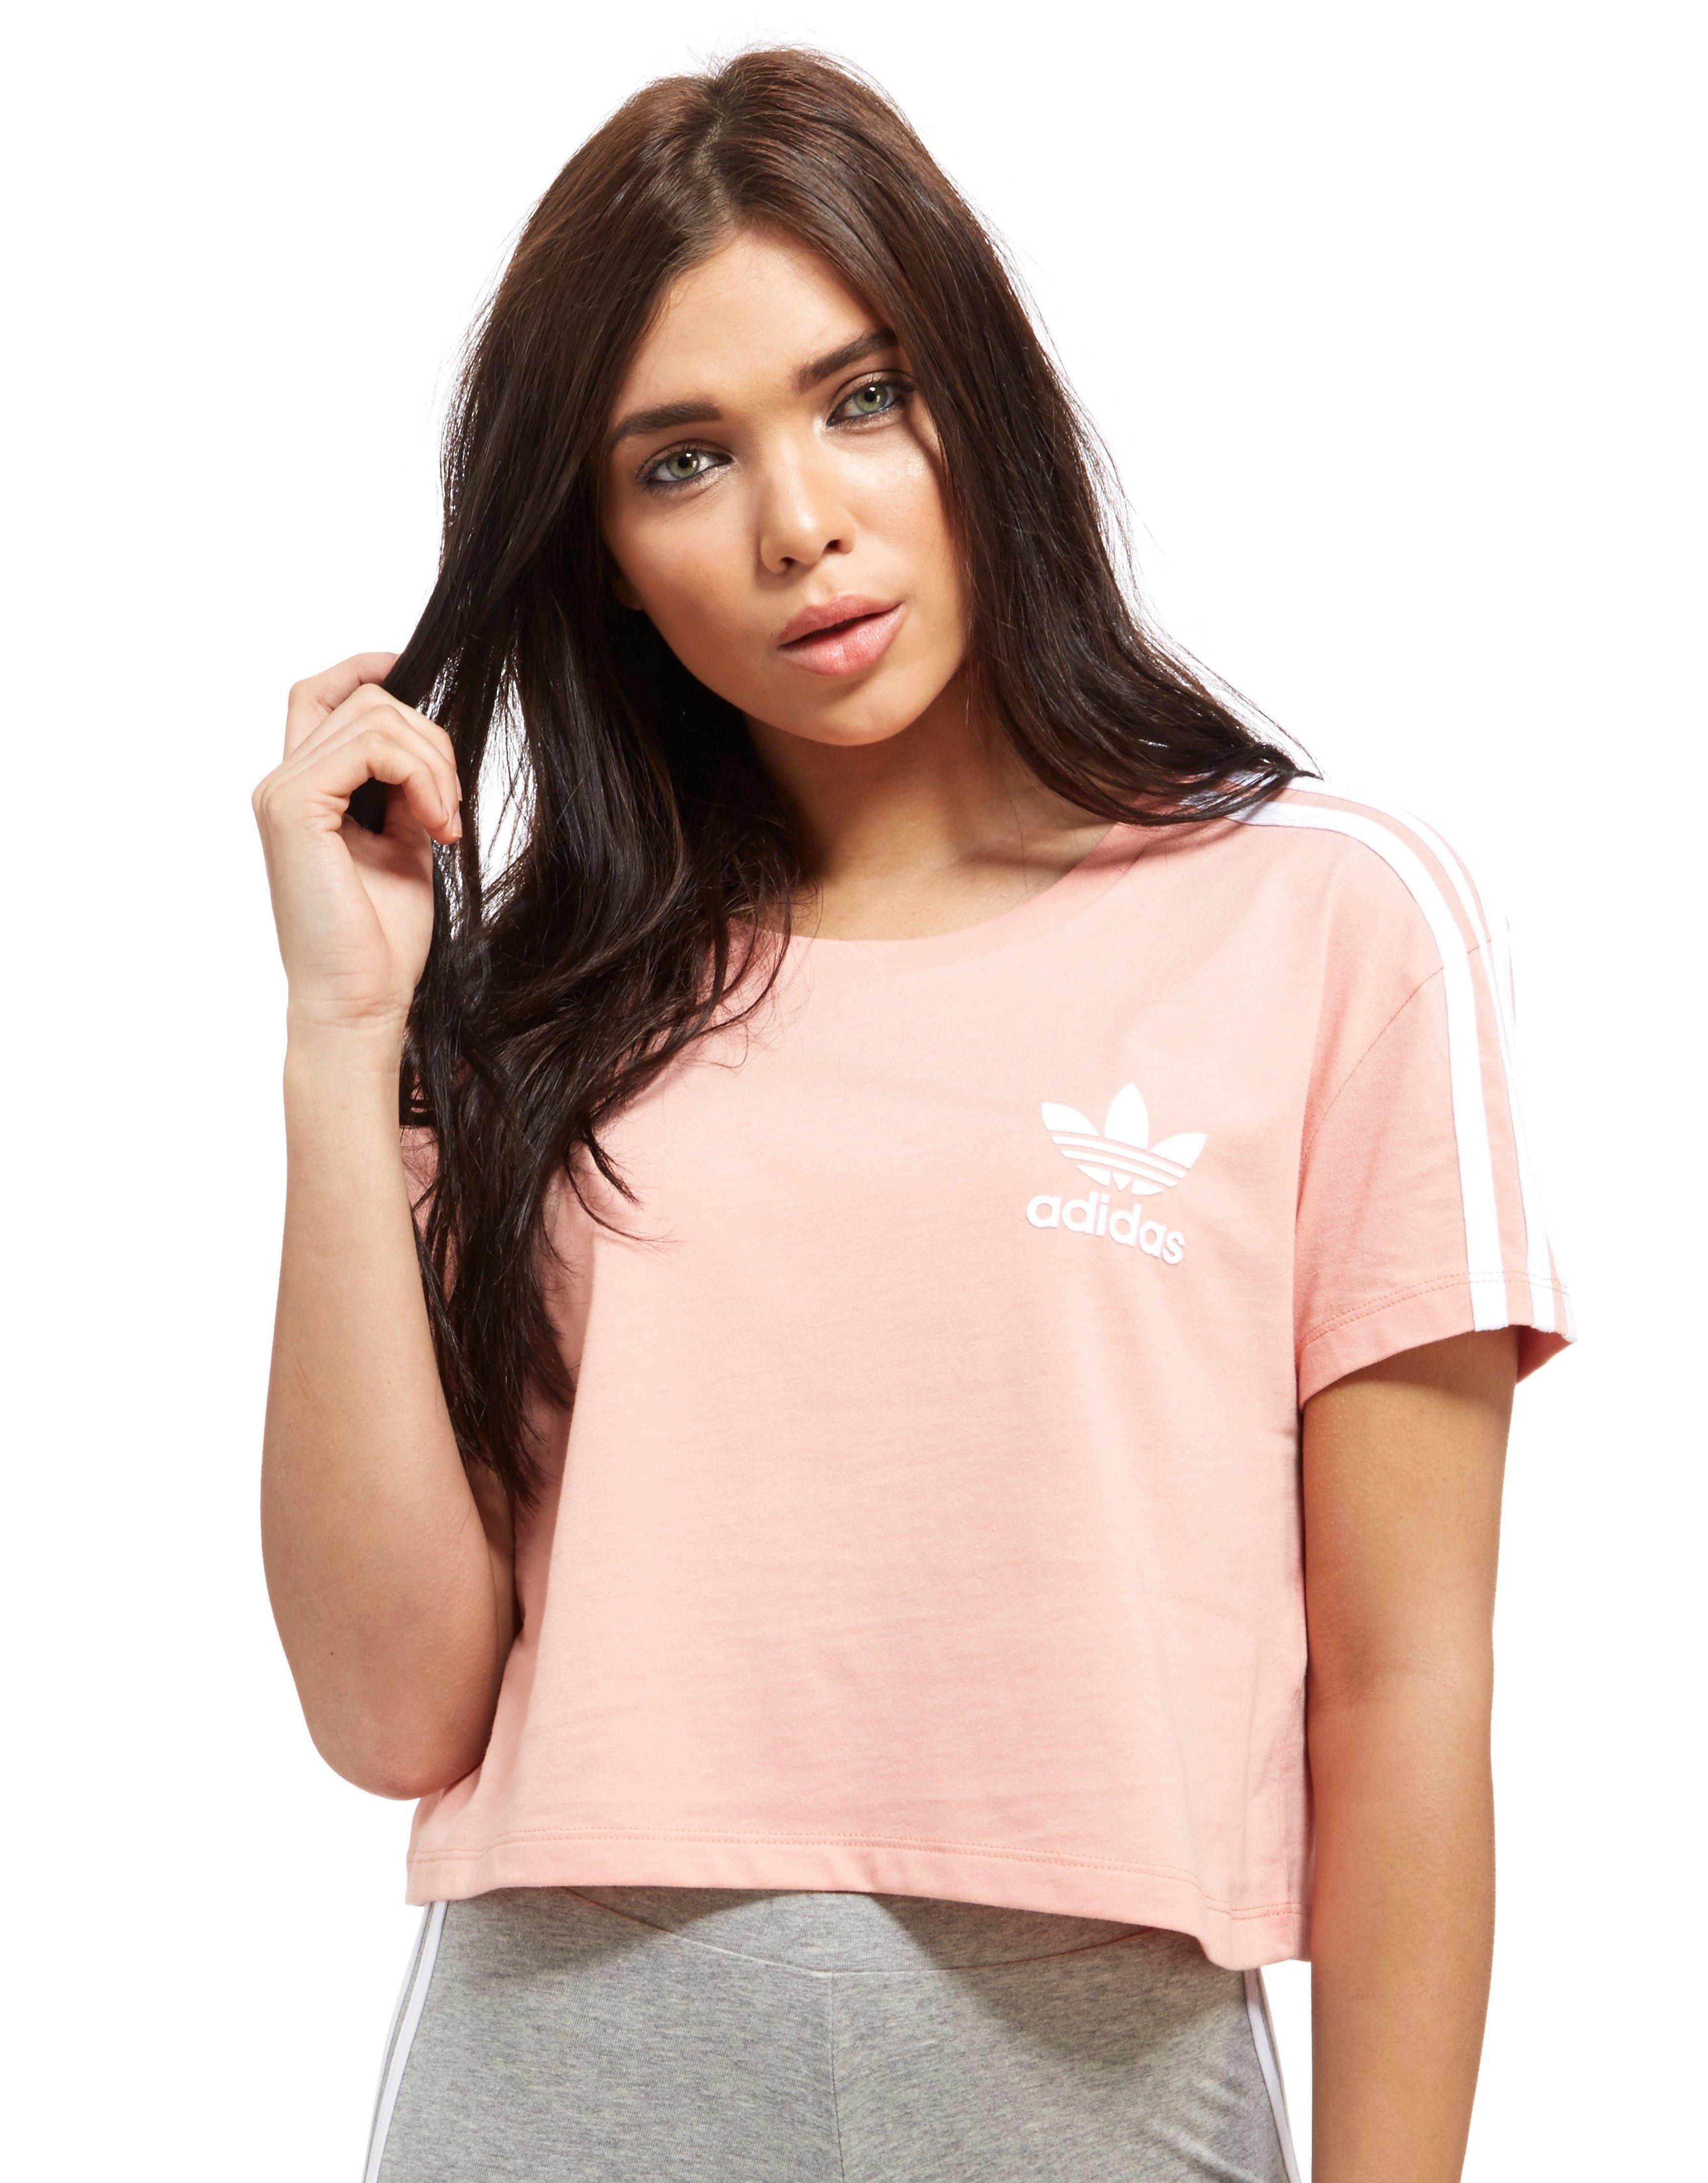 adidas Originals Cotton Crop California T-shirt in Pink/White (Pink) - Lyst